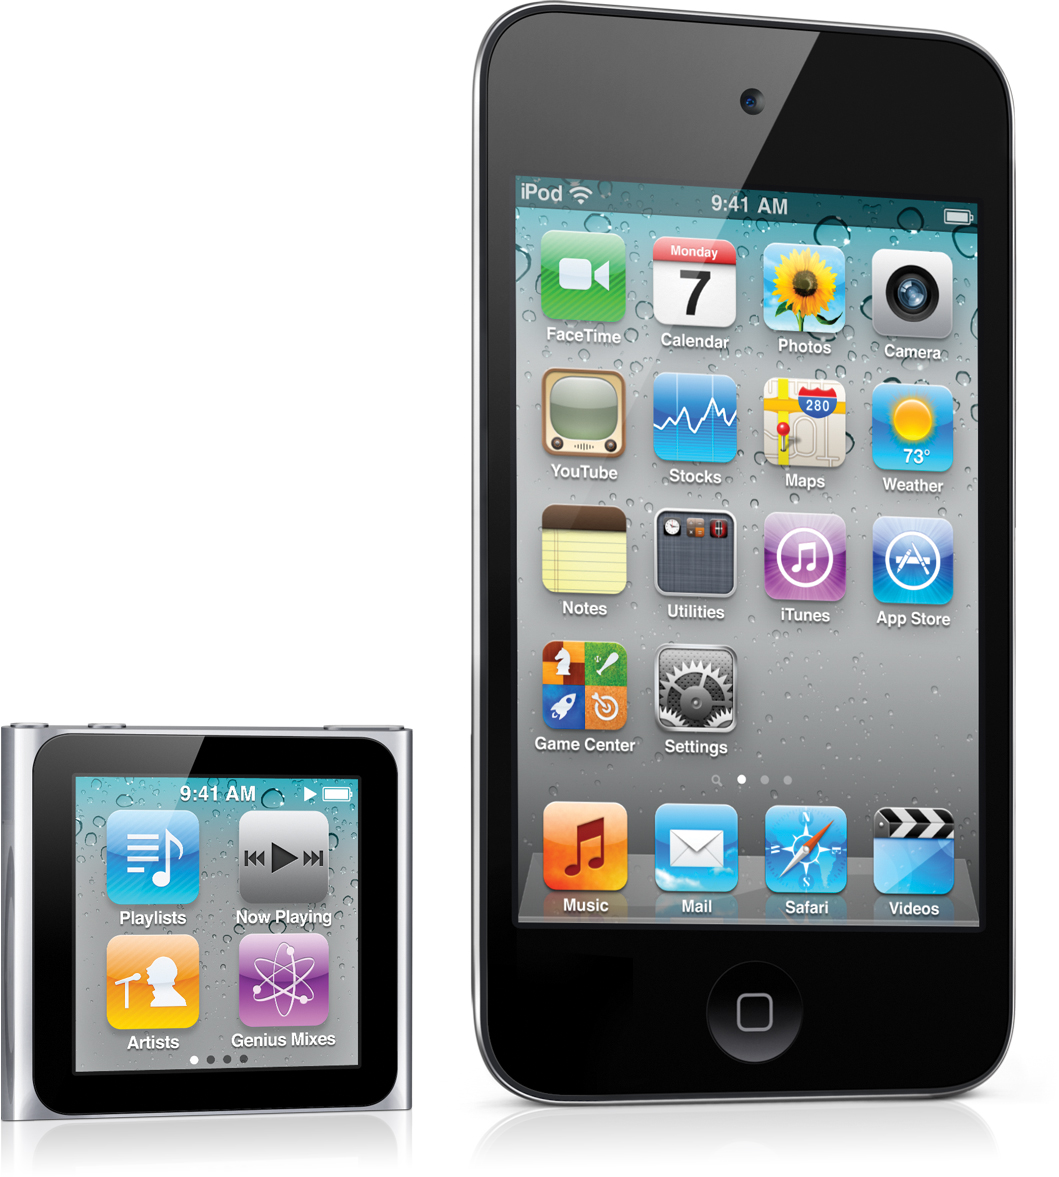 iPod nano e iPod touch